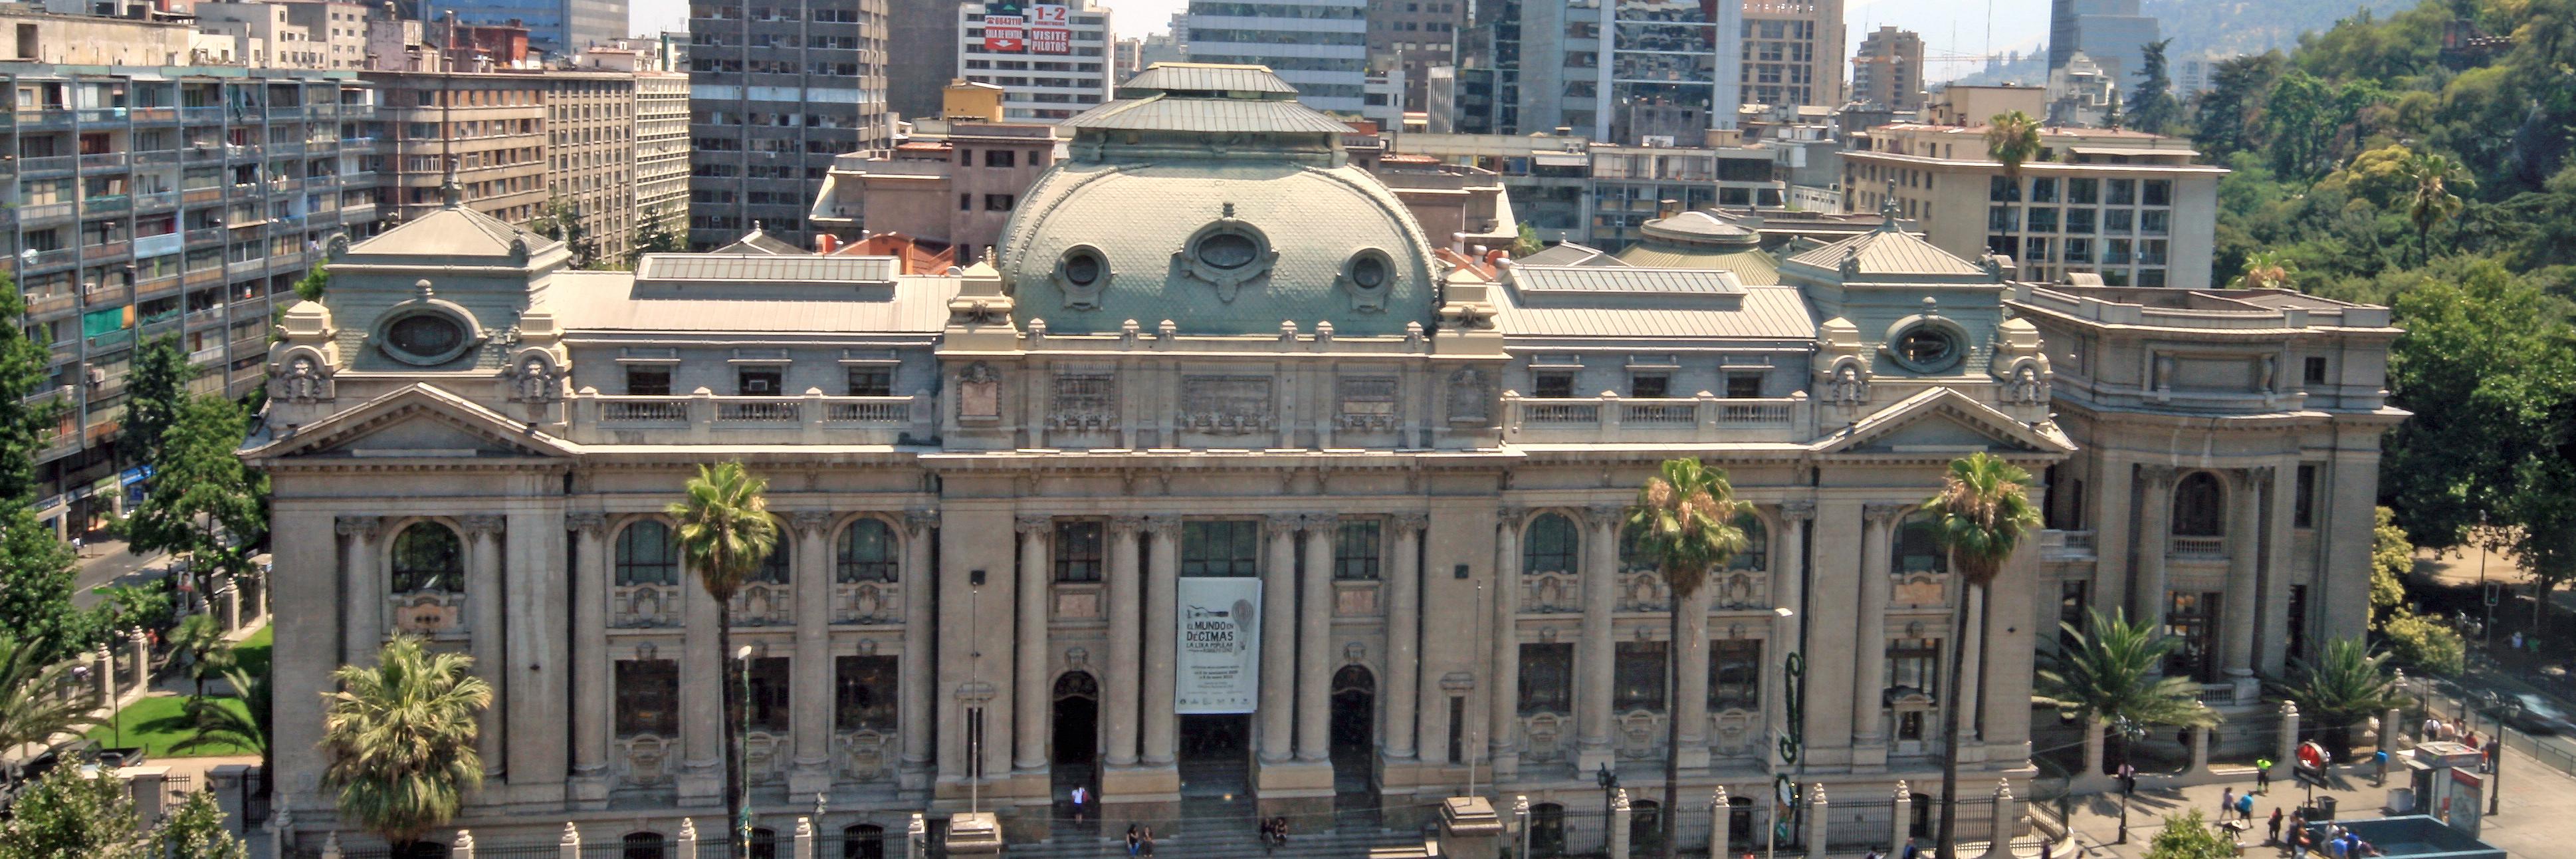 Vista del frontis de la Biblioteca Nacional